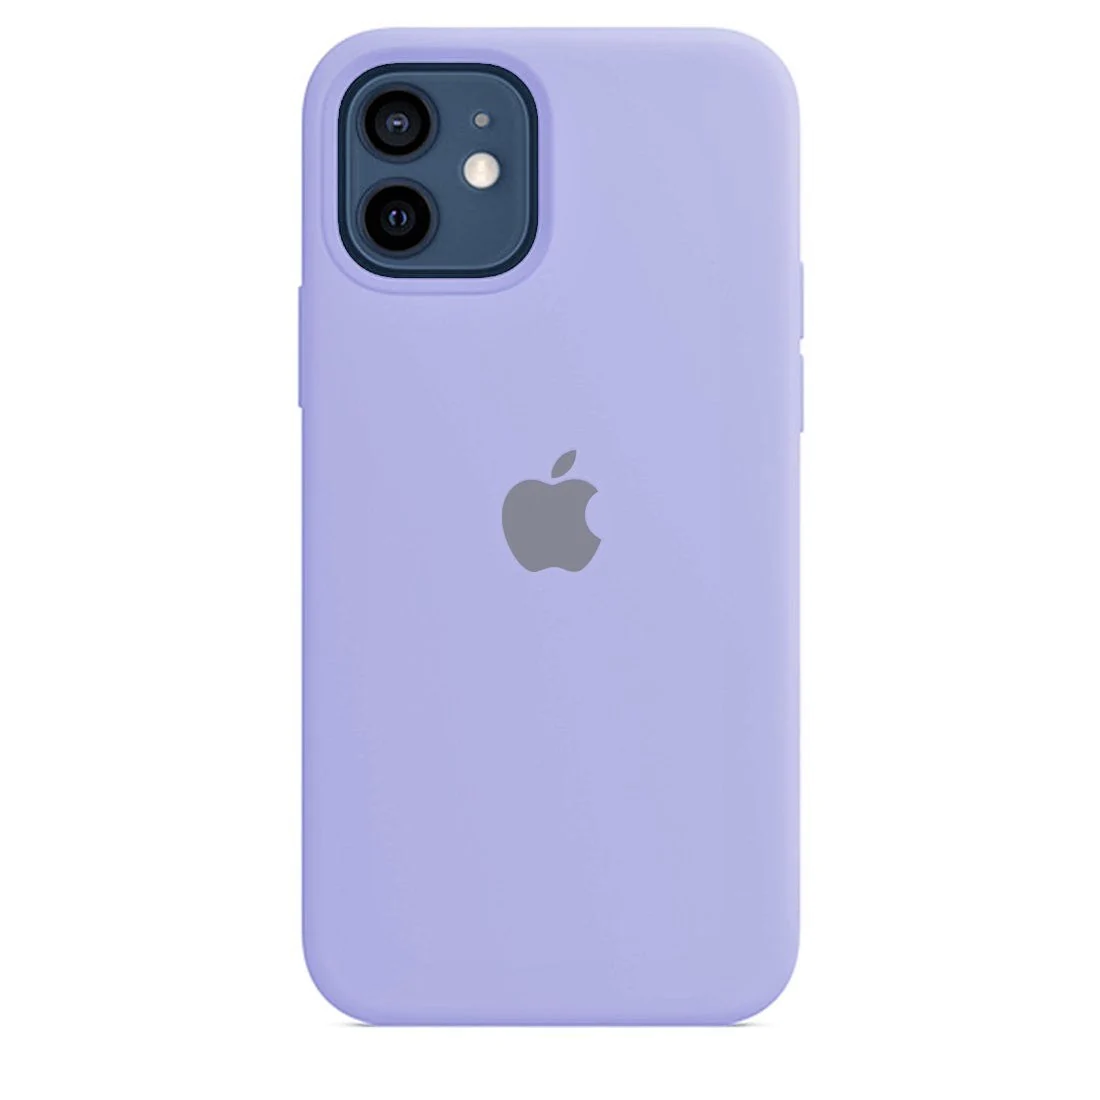 iPhone 12 Mini Original Liquid Silicon Case with Logo - Lavender